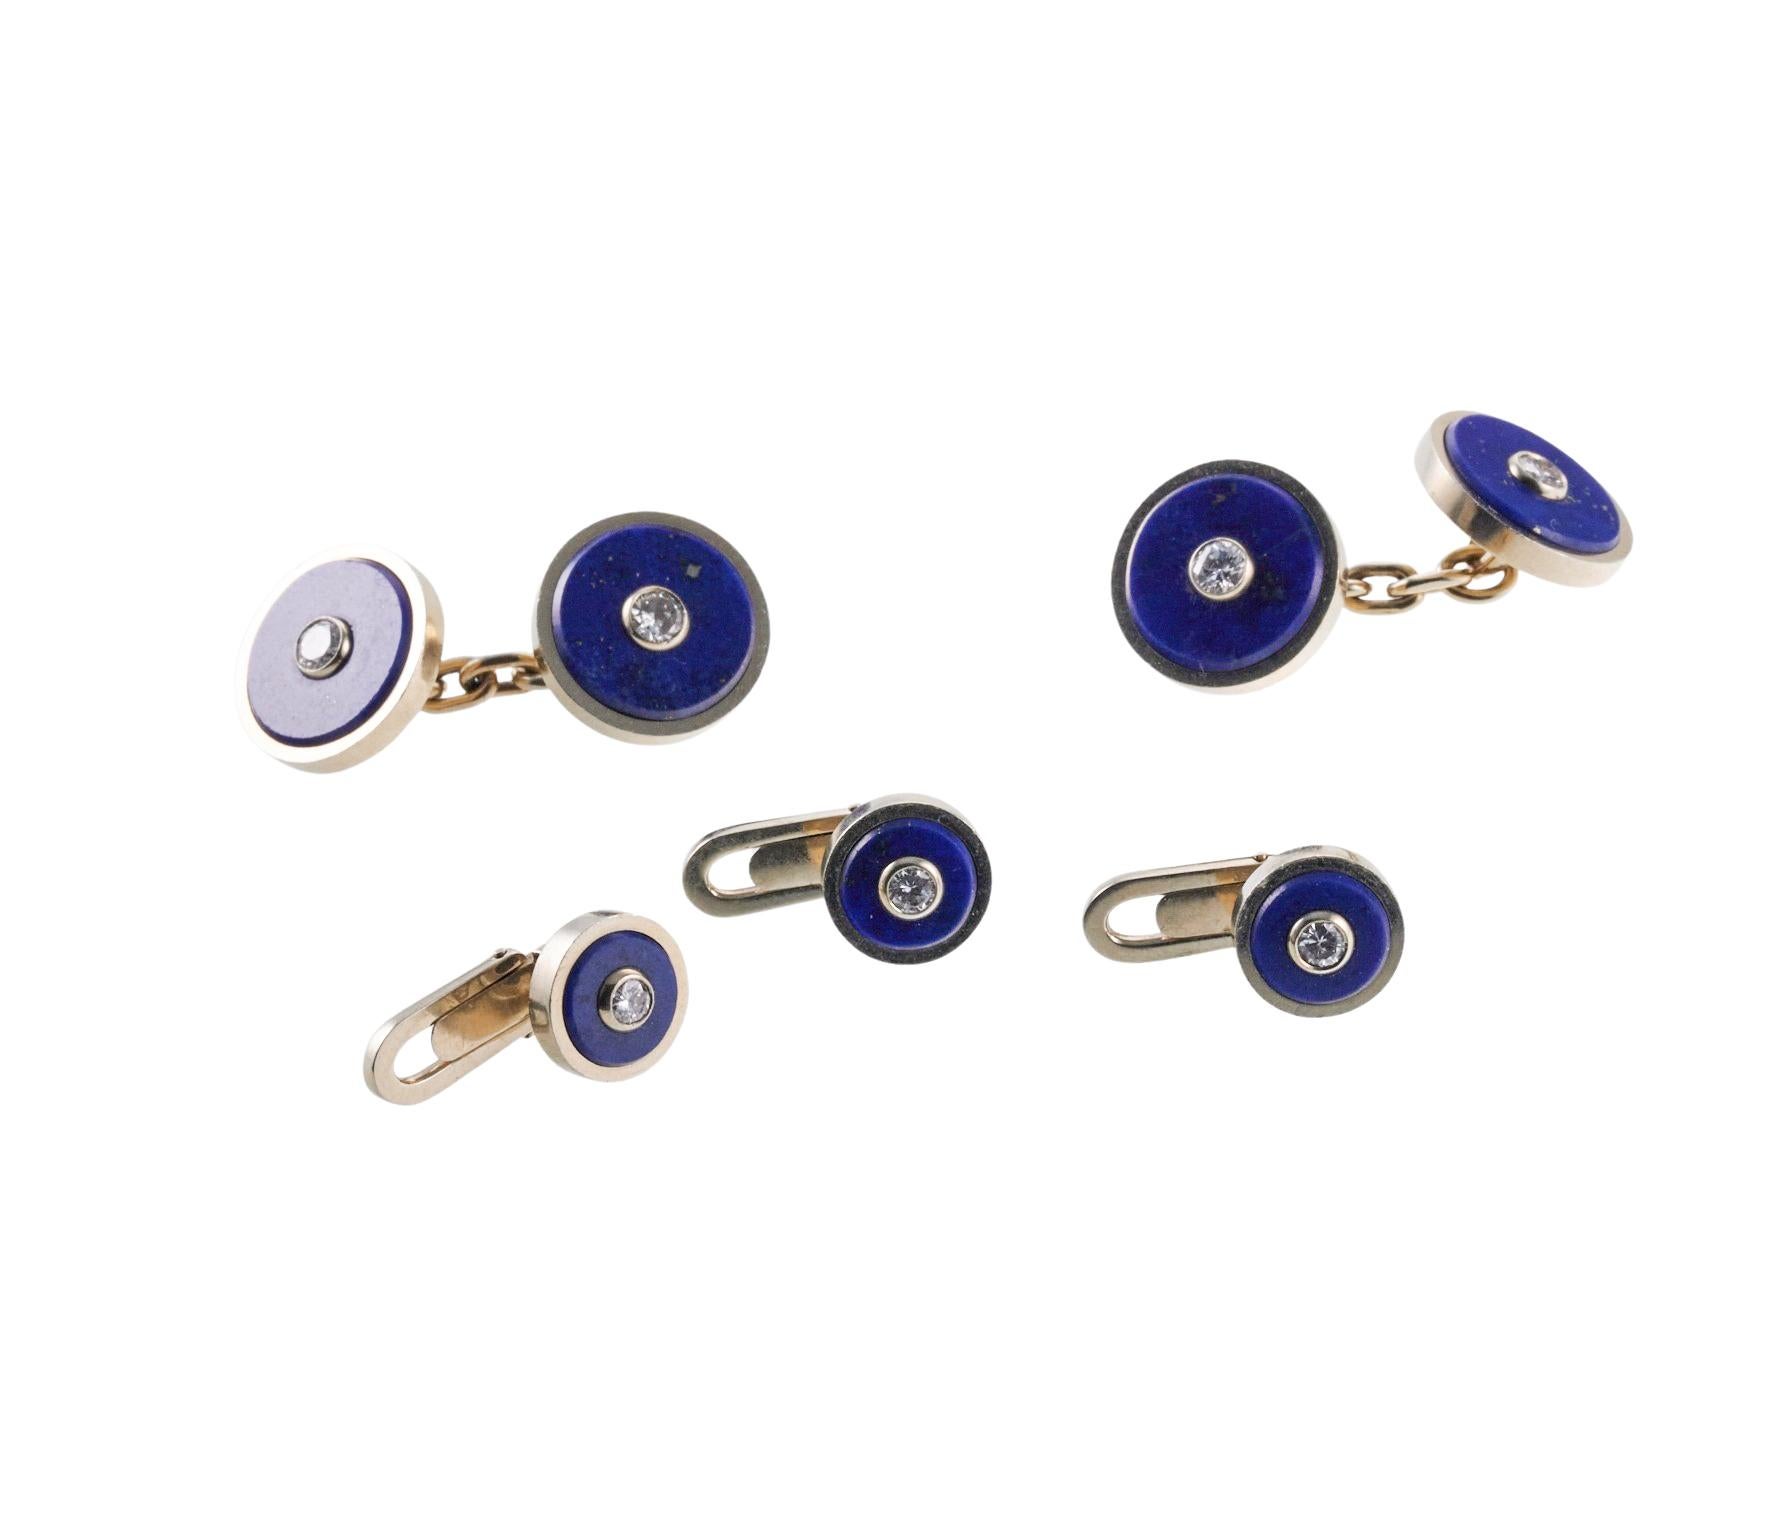 Ensemble de boutons de manchette et de clous en or 18 carats de fabrication italienne - sertis de lapis-lazuli et d'un diamant au centre. Le haut du bouton de manchette mesure 13 mm de diamètre, le clou 8 mm. Le total des diamants est d'environ